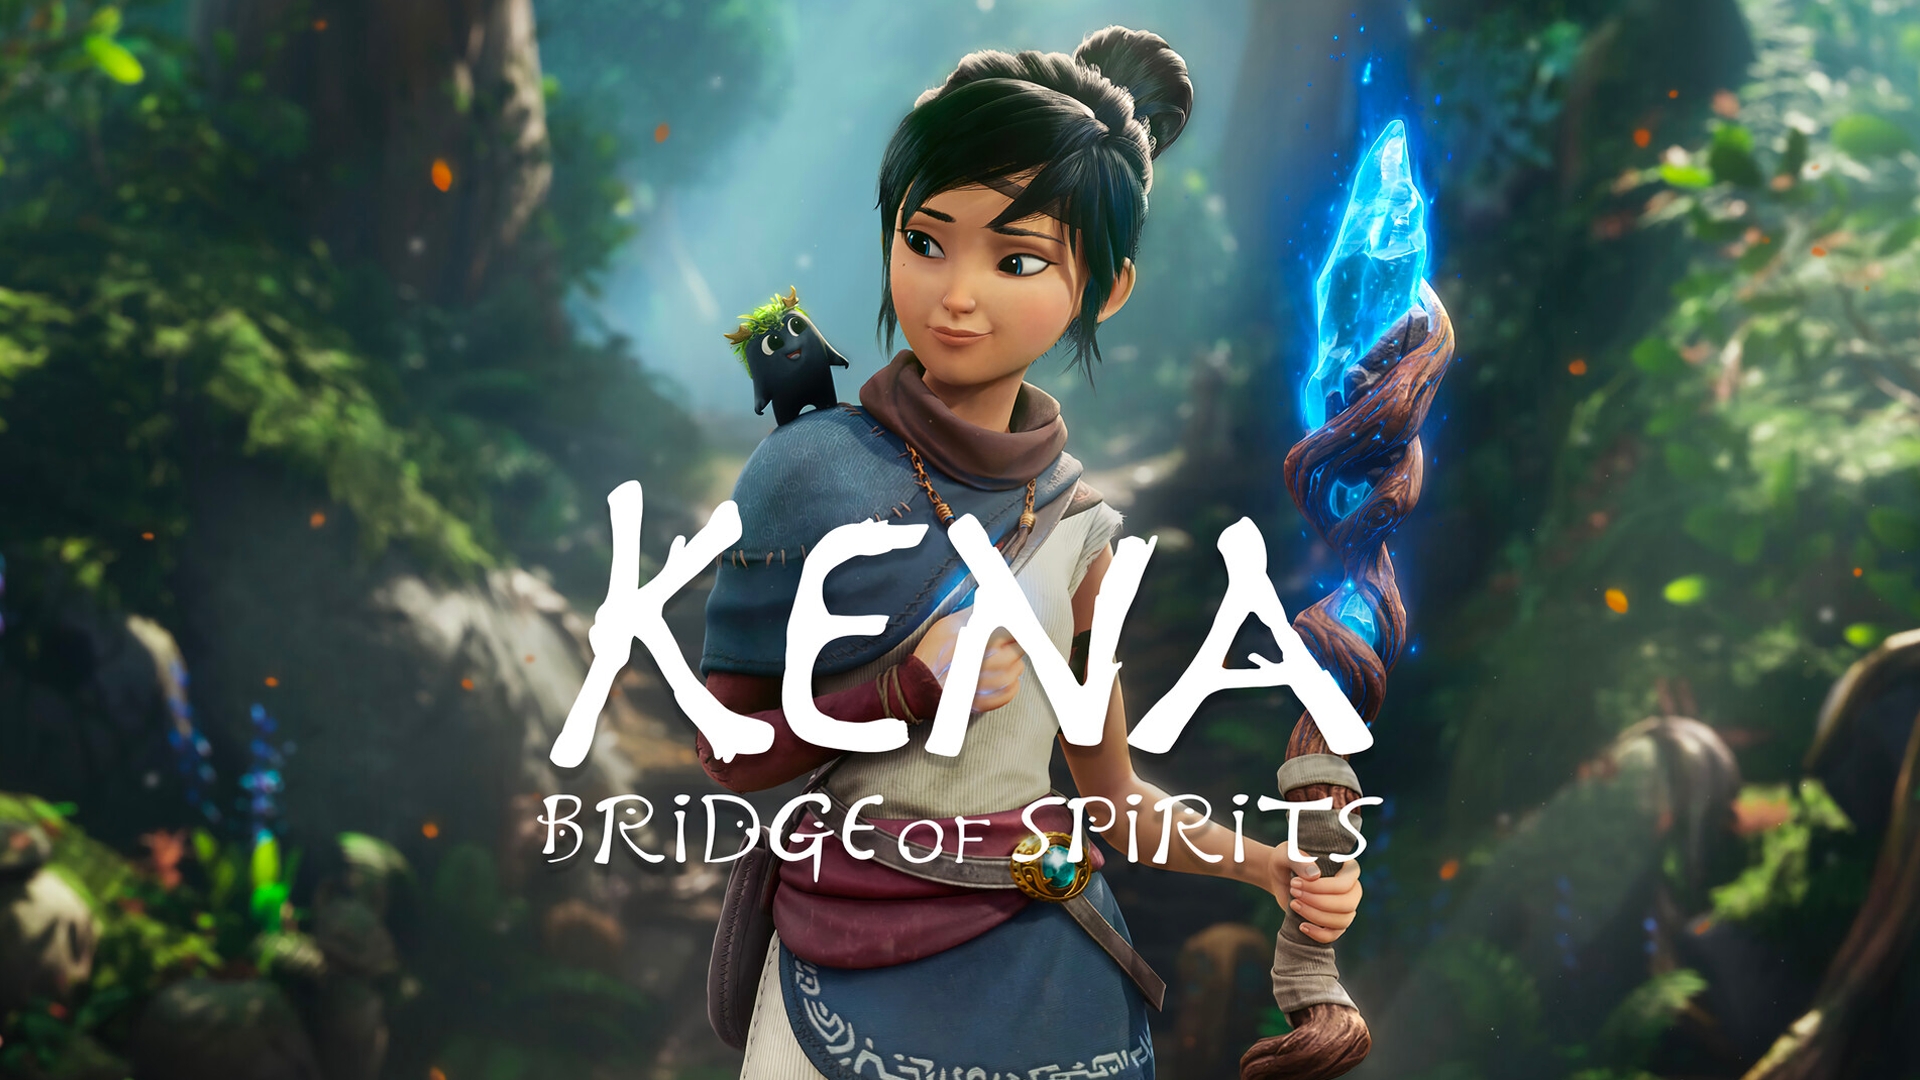 kena bridge of spirits pc download free